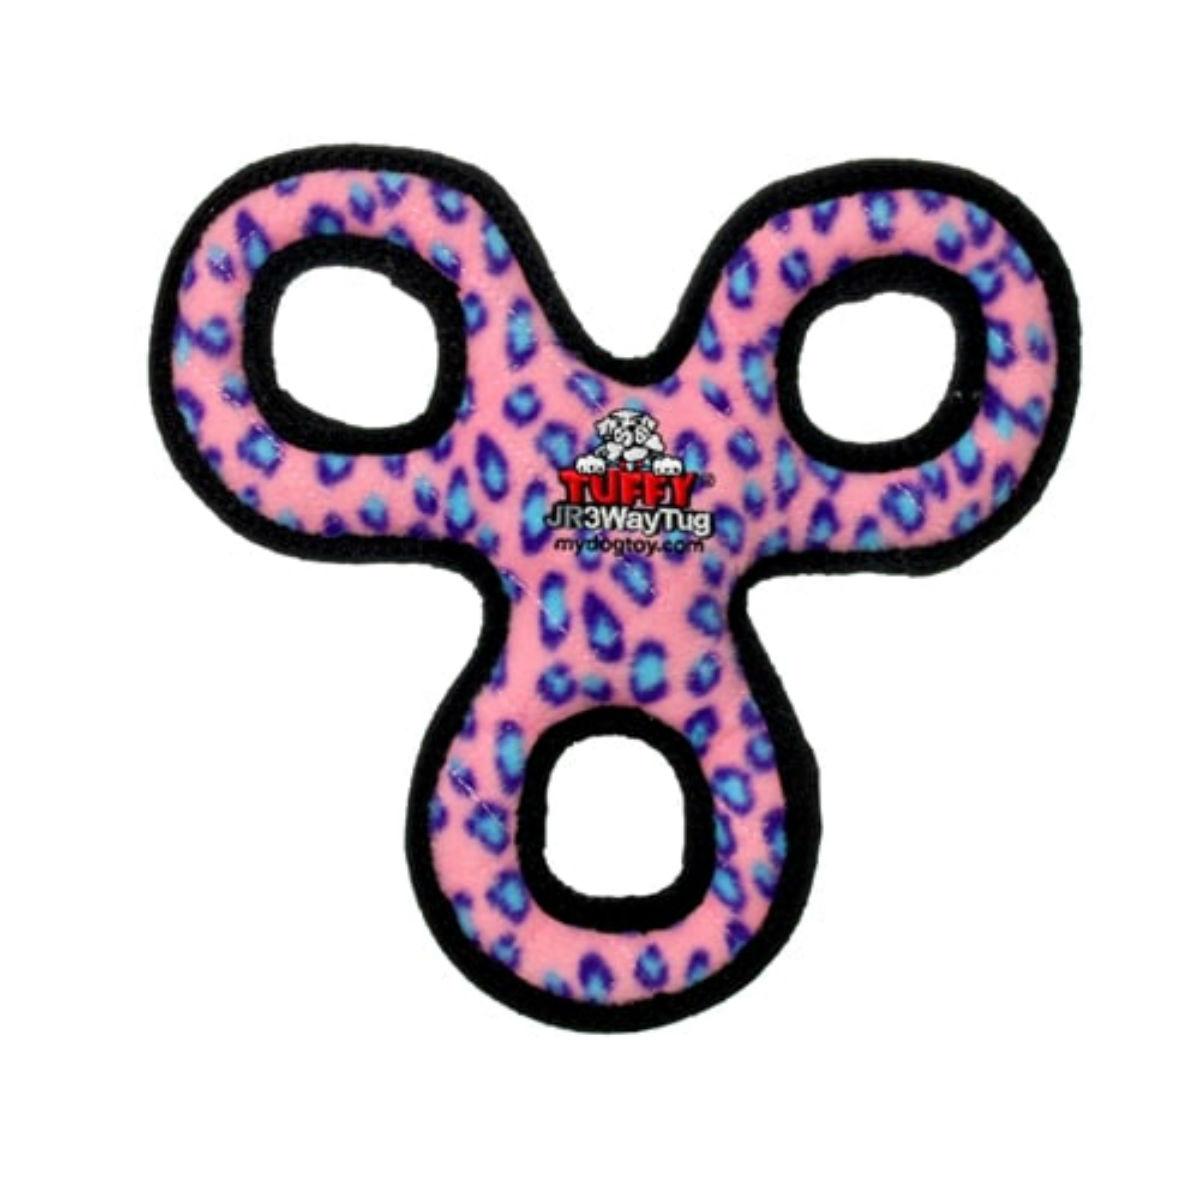 Tuffy Jr 3-Way Tug Dog Toy - Pink Leopard